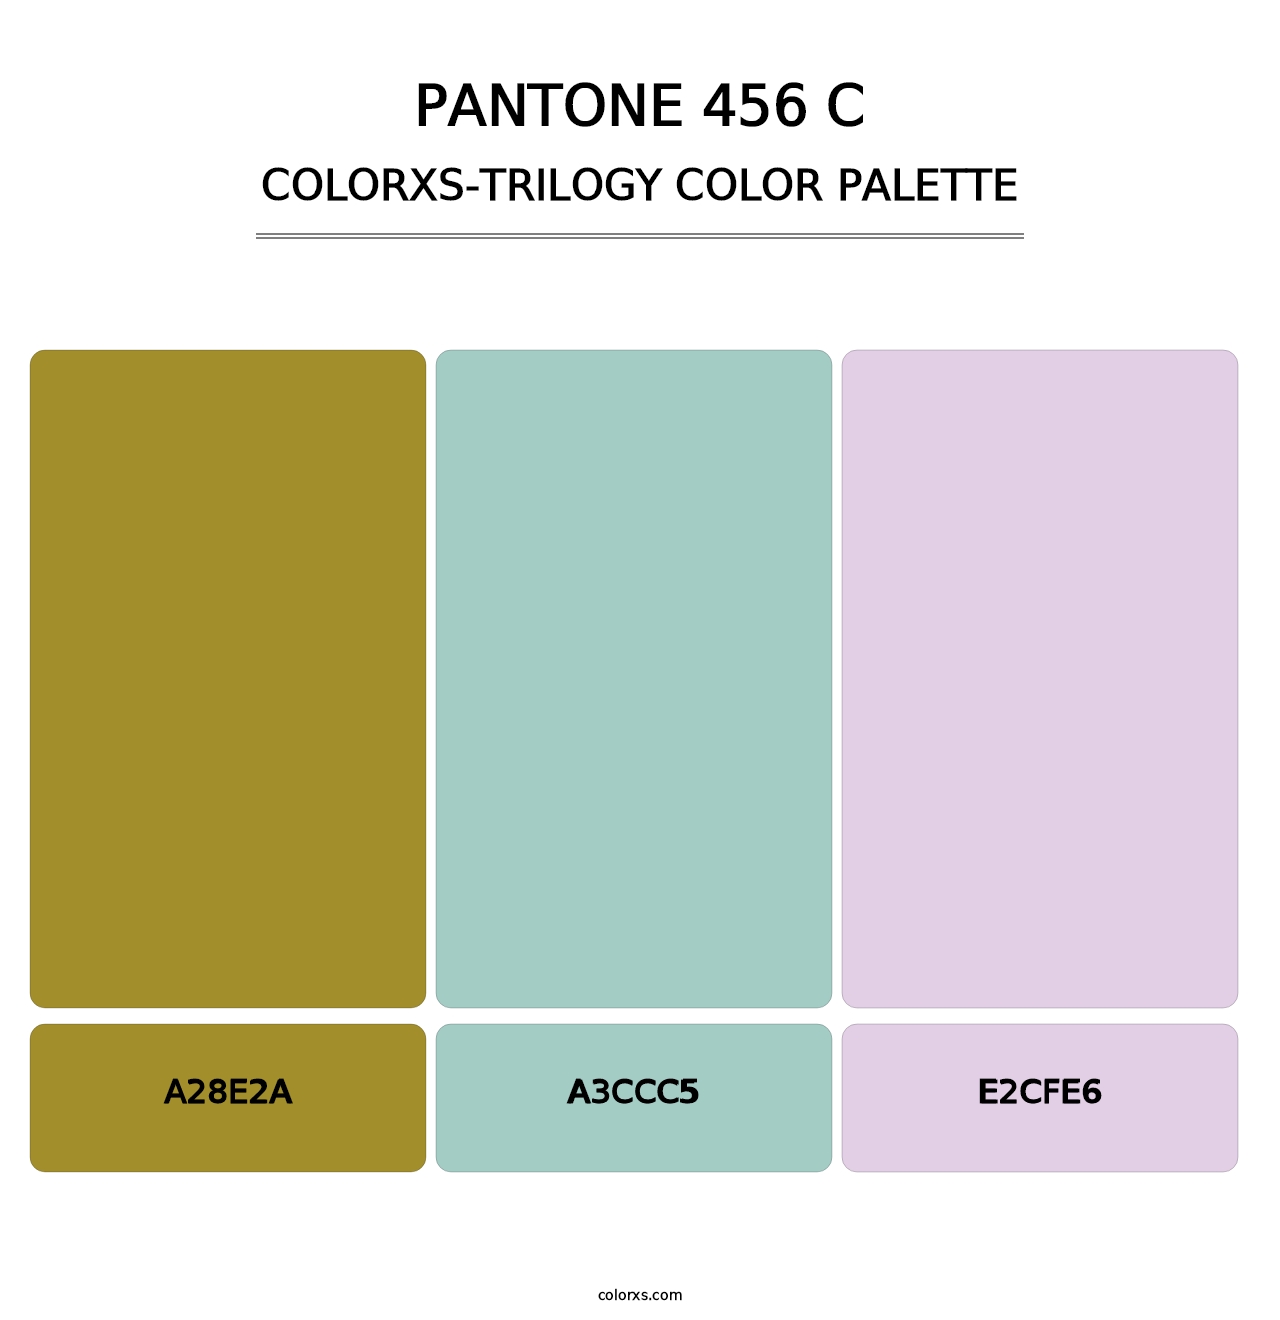 PANTONE 456 C - Colorxs Trilogy Palette